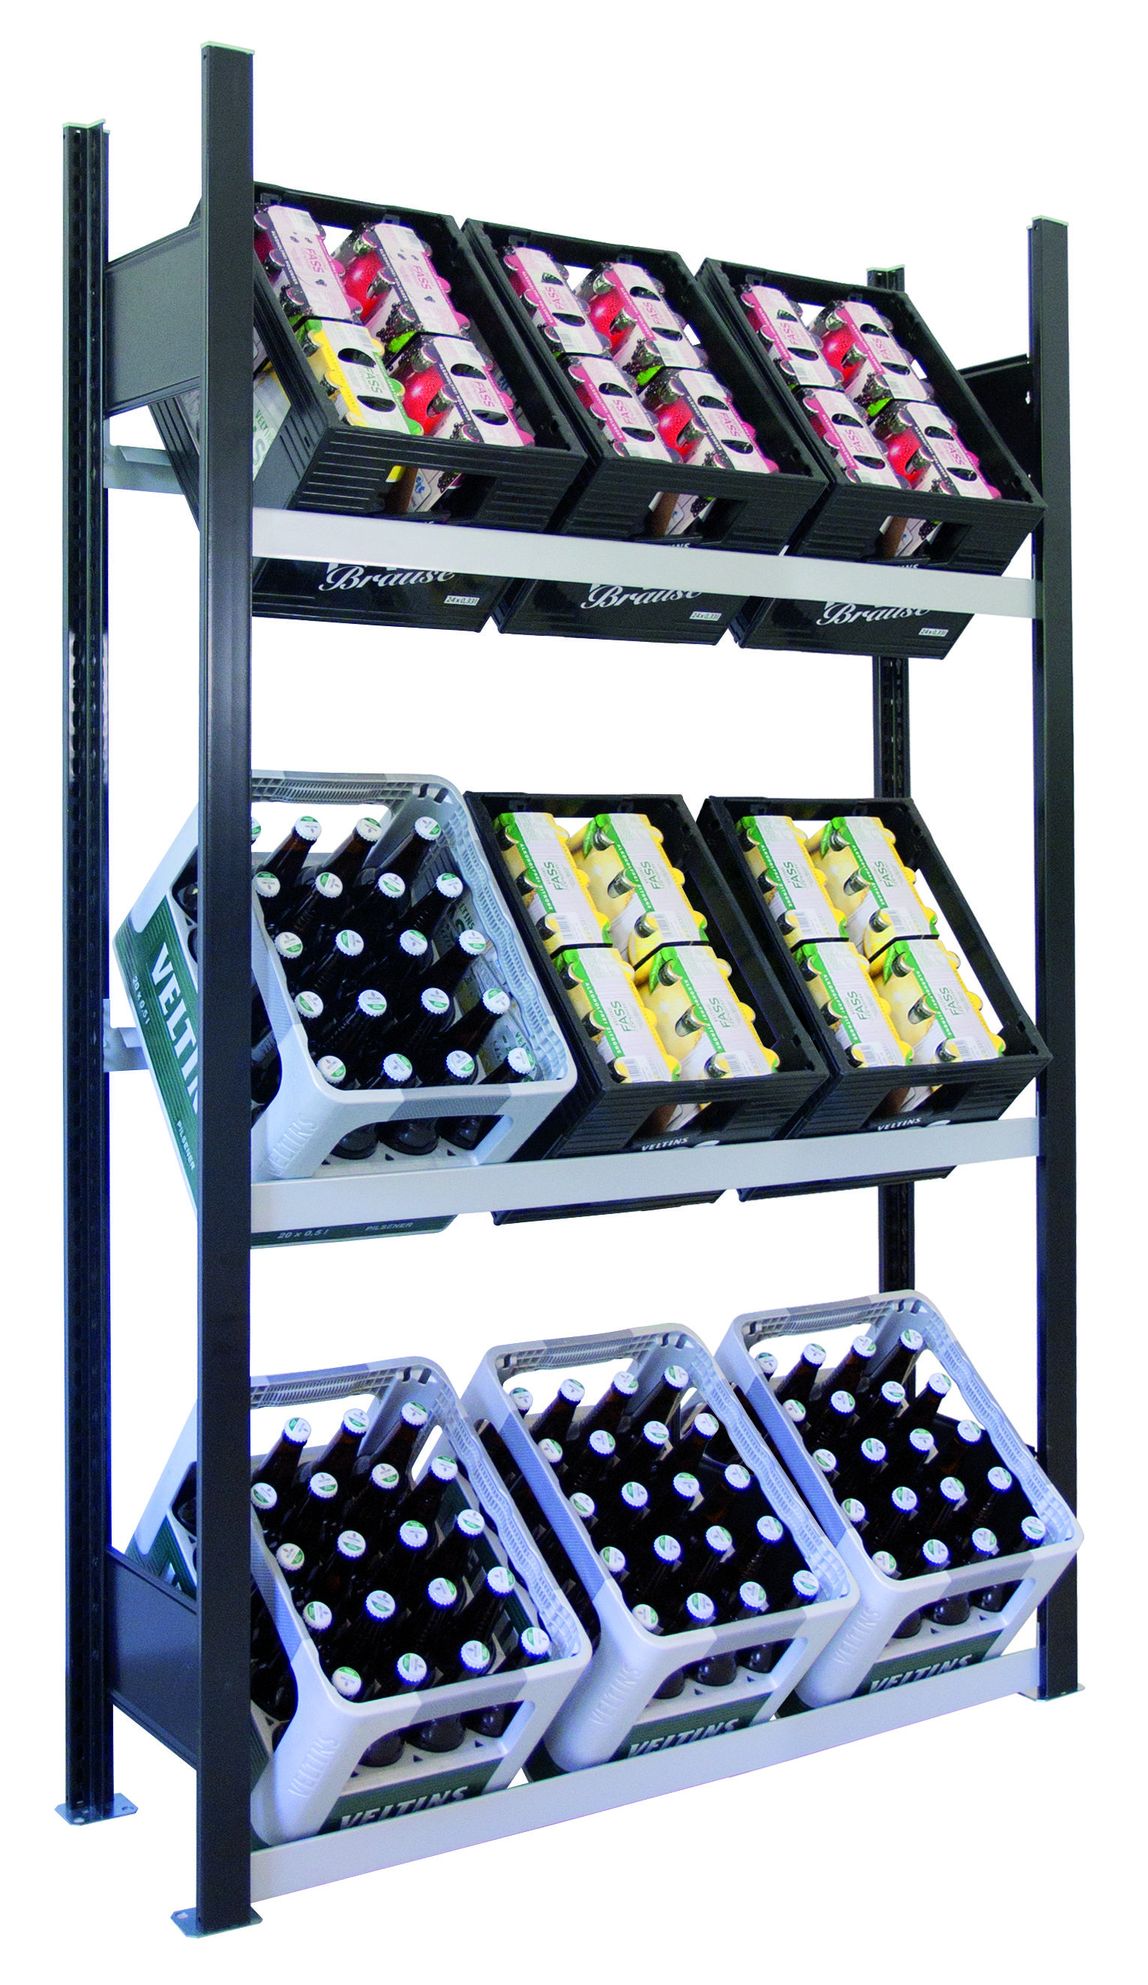 Getränkekistenregal für bis zu 9 Kisten, 180x106x30 cm (HxBxT), Traglast pro Ebene 60 Kg, schwarz-silber